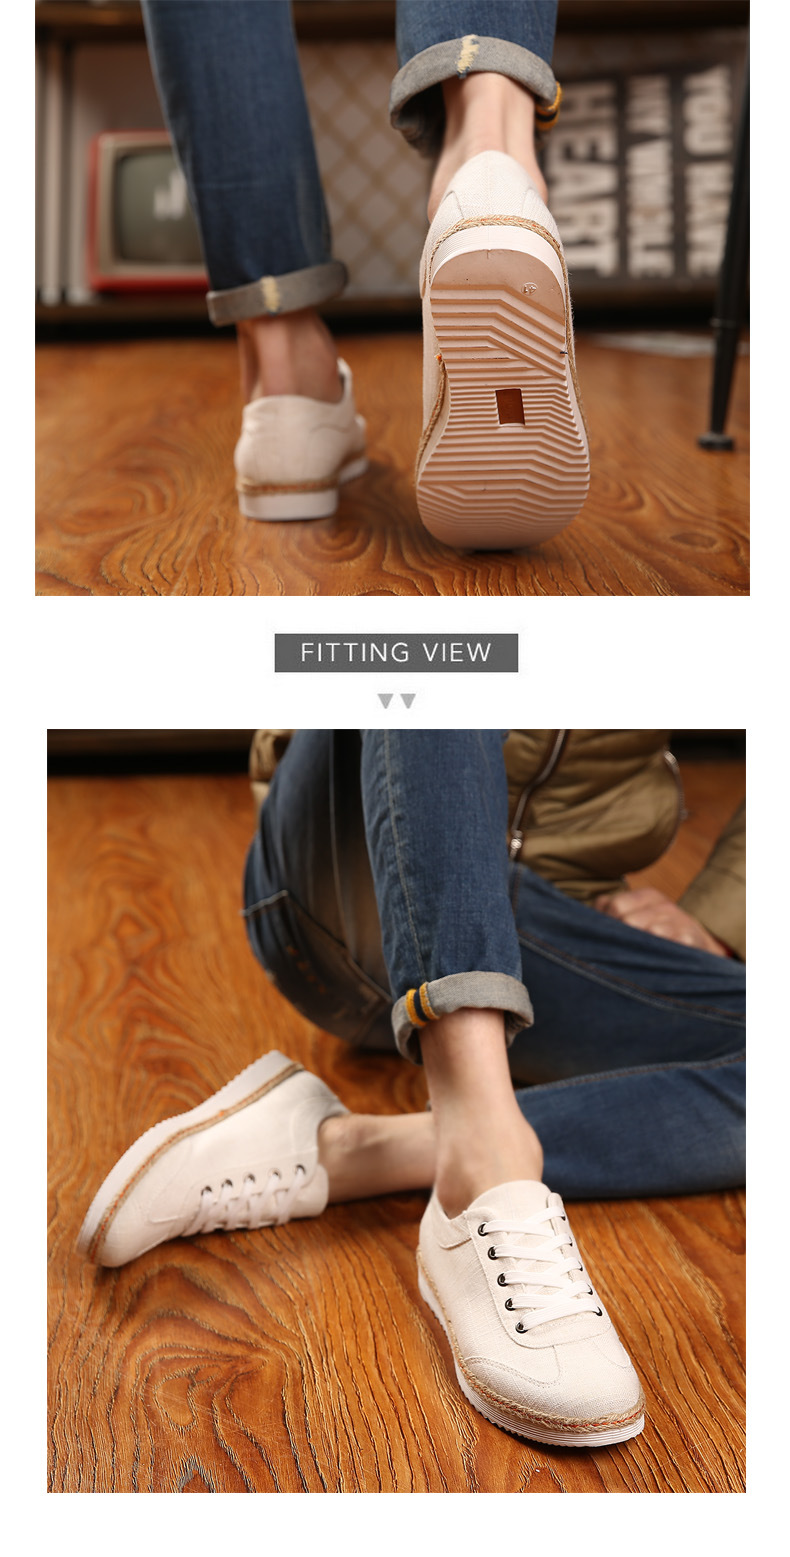 低帮新款系带韩版亚麻布帆布鞋男士日常休闲鞋子潮鞋男学生鞋板鞋示例图19